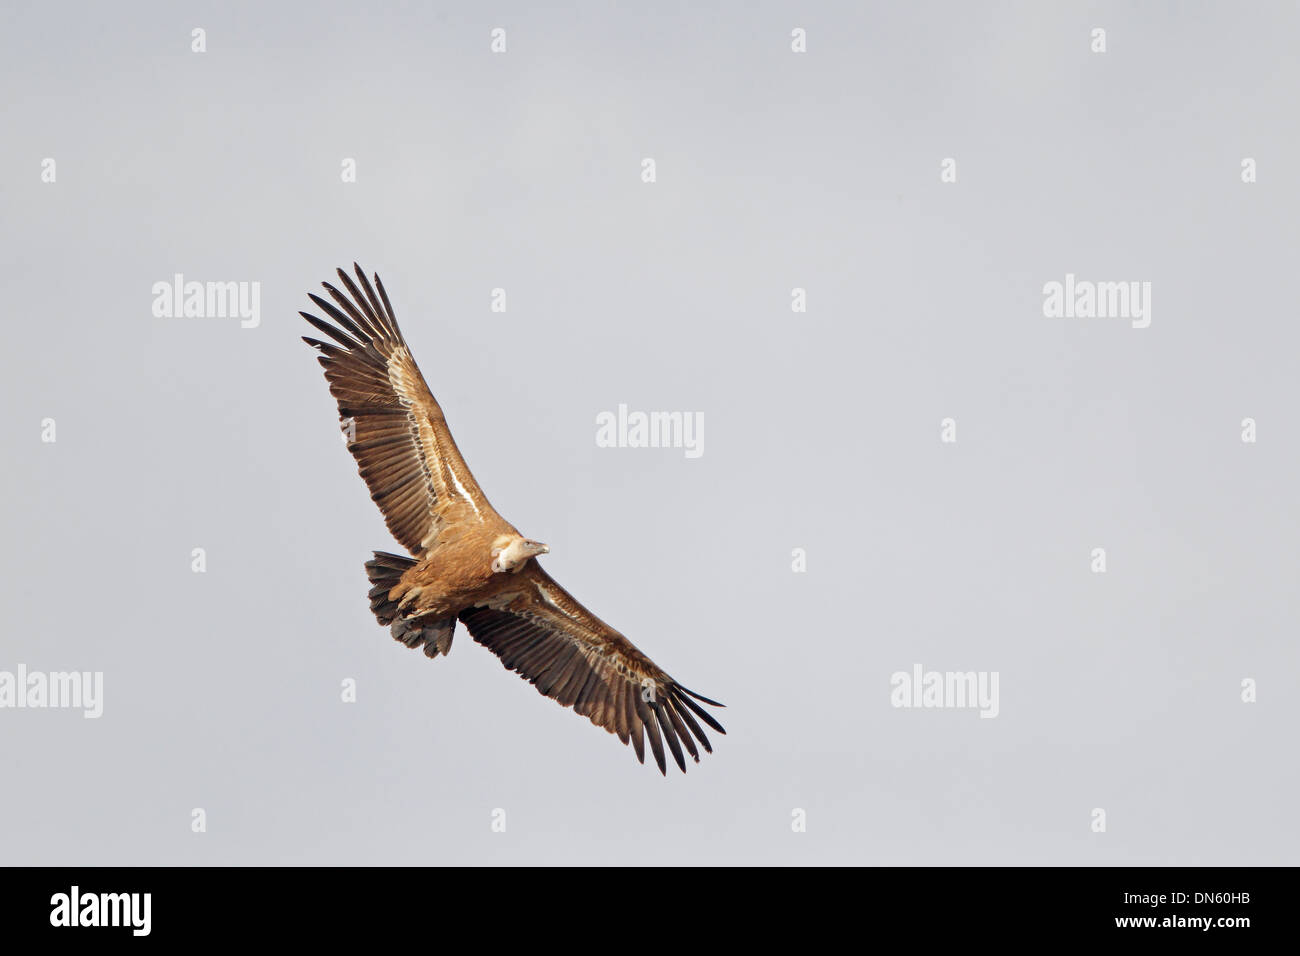 Eurasian Griffon Vulture in flight Stock Photo